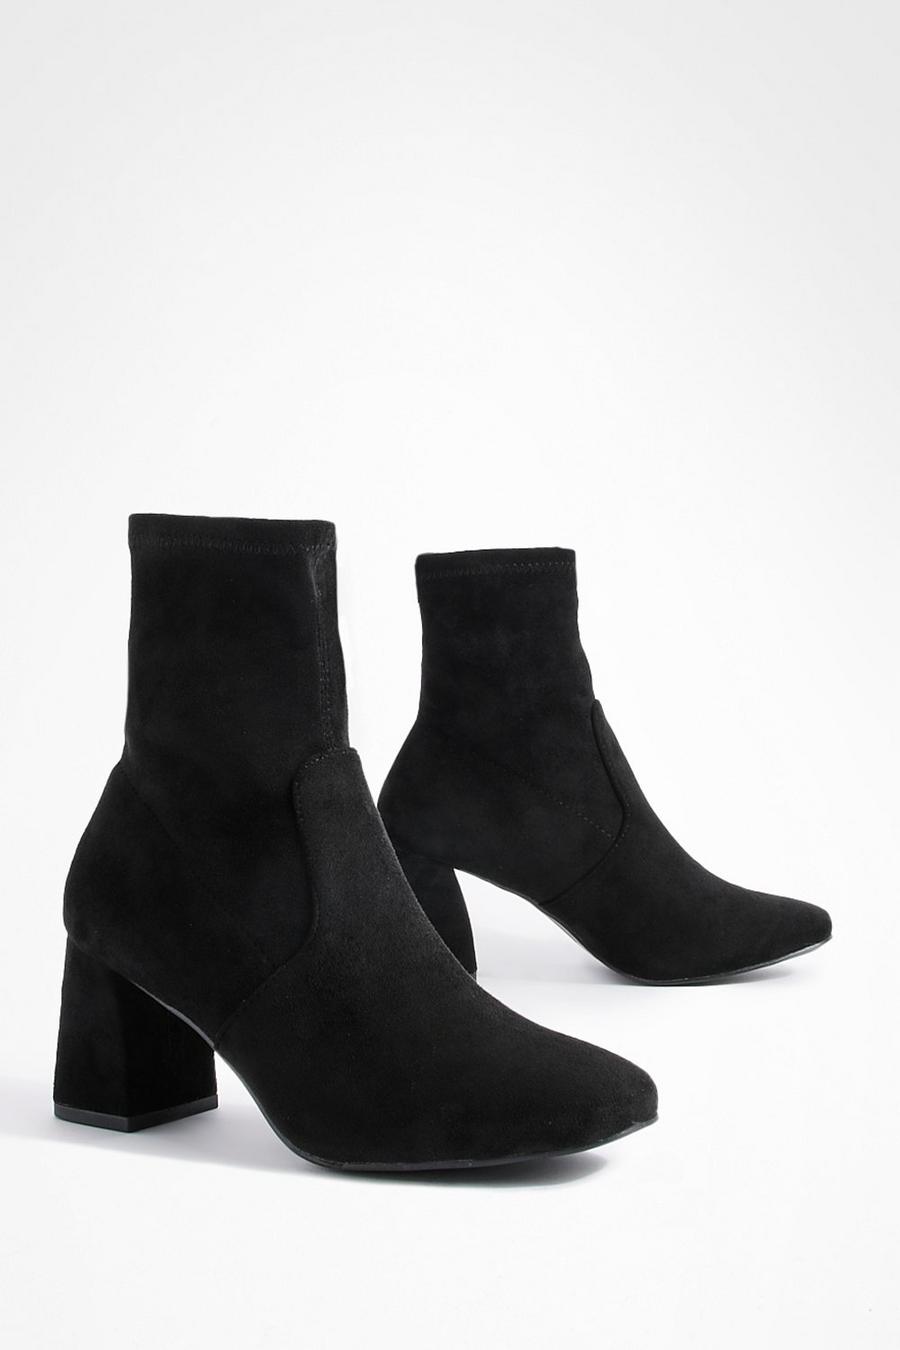 Black svart Boots med fyrkantig tå, blockklack och bred passform